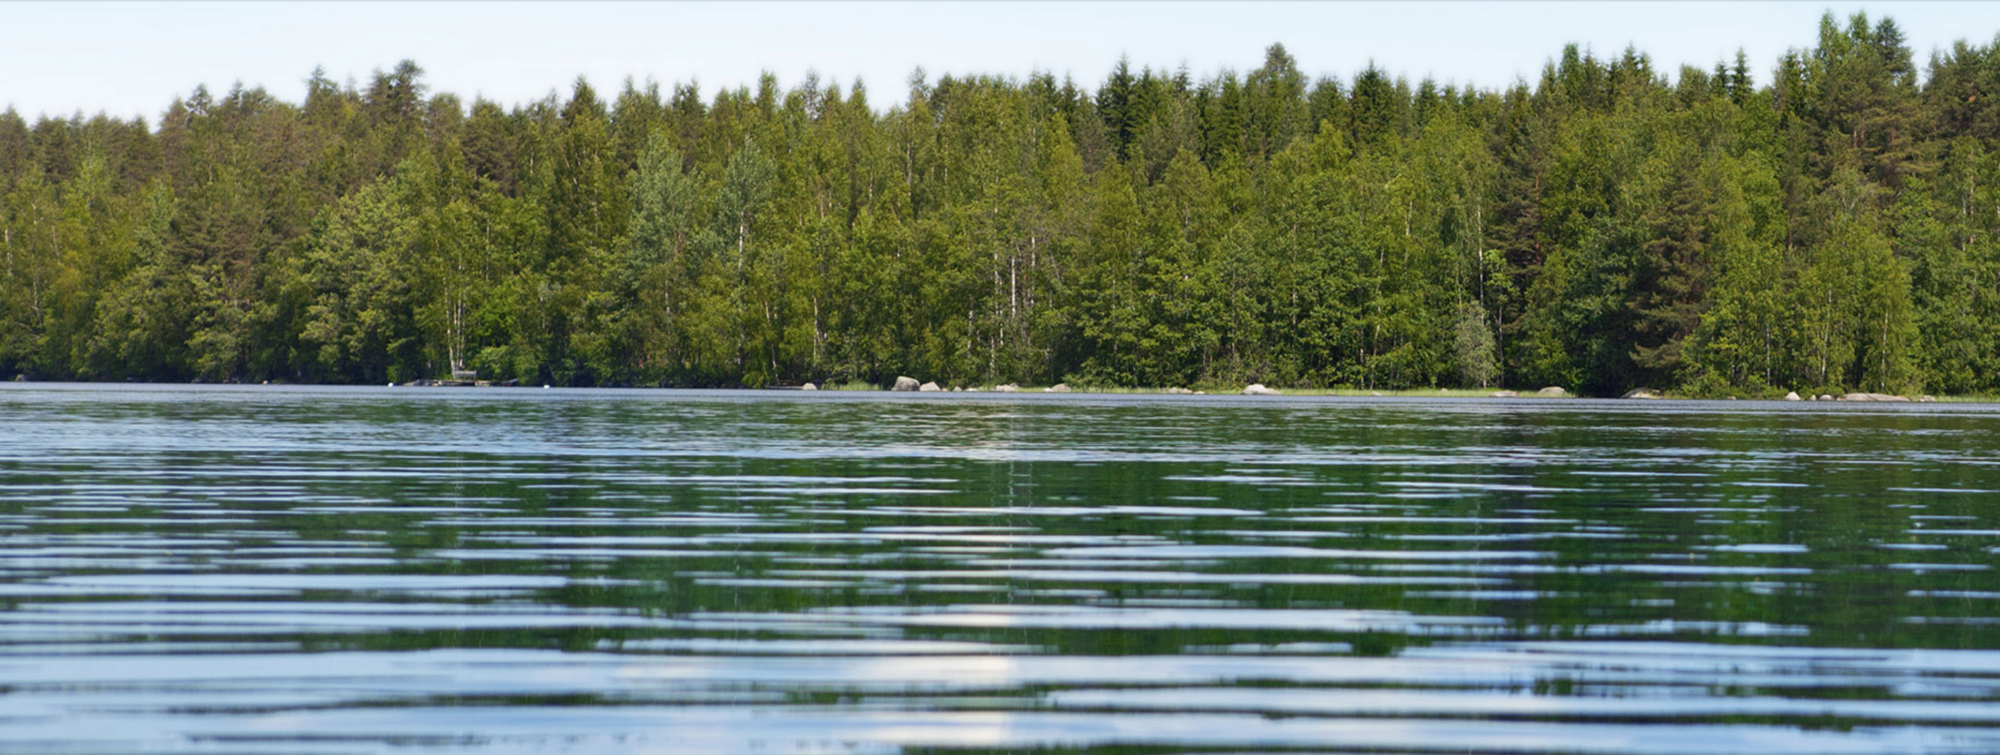 En spegelblank sjö med skog i bakgrunden